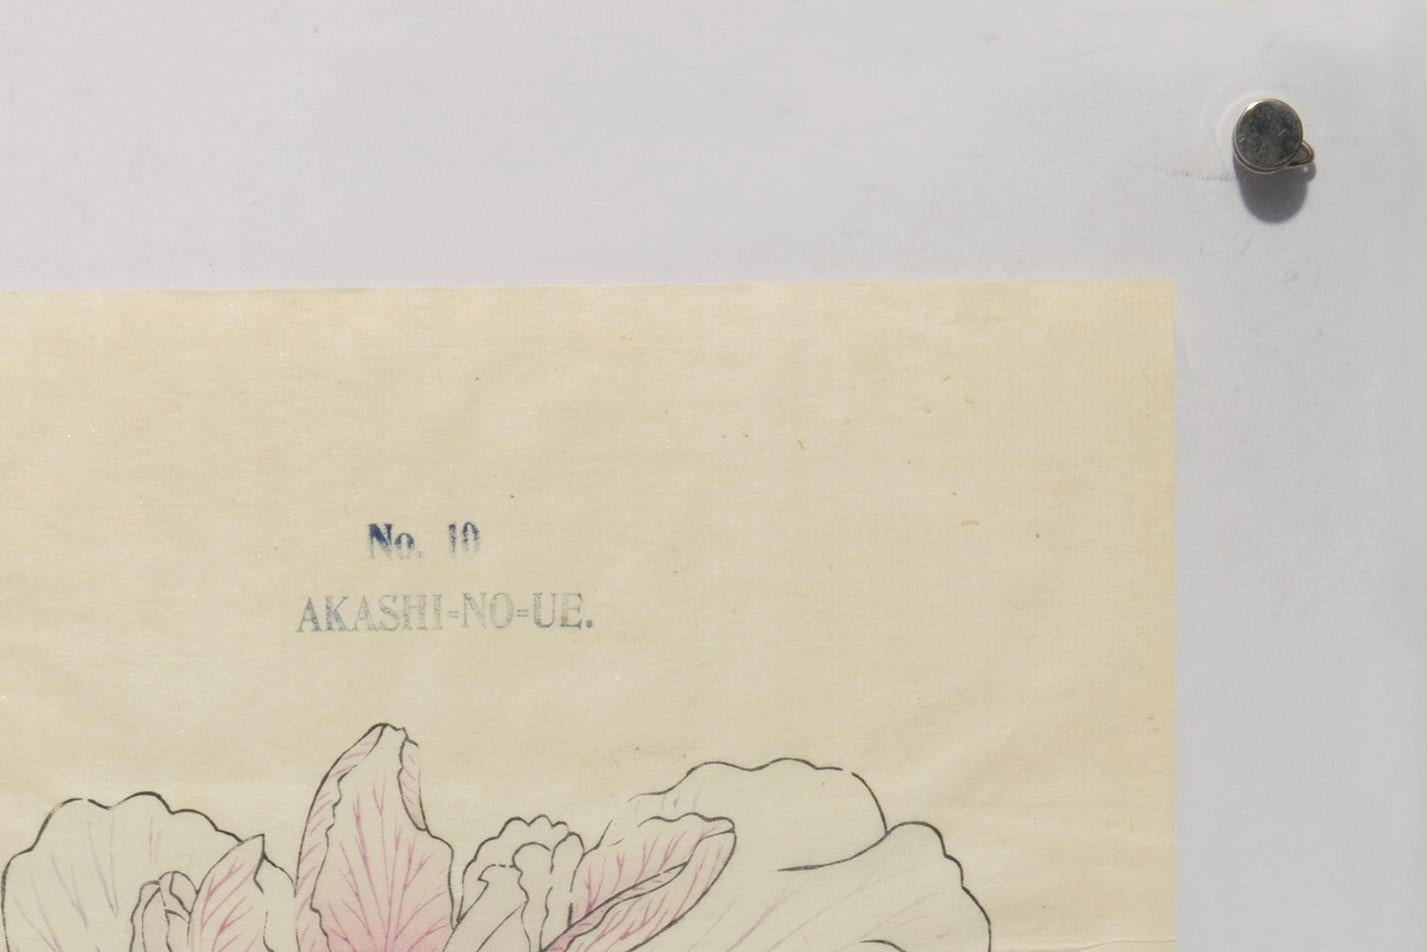 Iris Kaempferi: Nr. 10 AKASHI-NO-UE 
Tokio, Yoshinoen-Garten, um 1910.
Handkolorierter Farbholzschnitt auf handgeschöpftem Reispapier, oben nummeriert und beschriftet,  mit Tinte umrissen.  Gerahmt in Plexiglas. Gesamtgröße: 49 x 36,7 cm. 

Schönes,